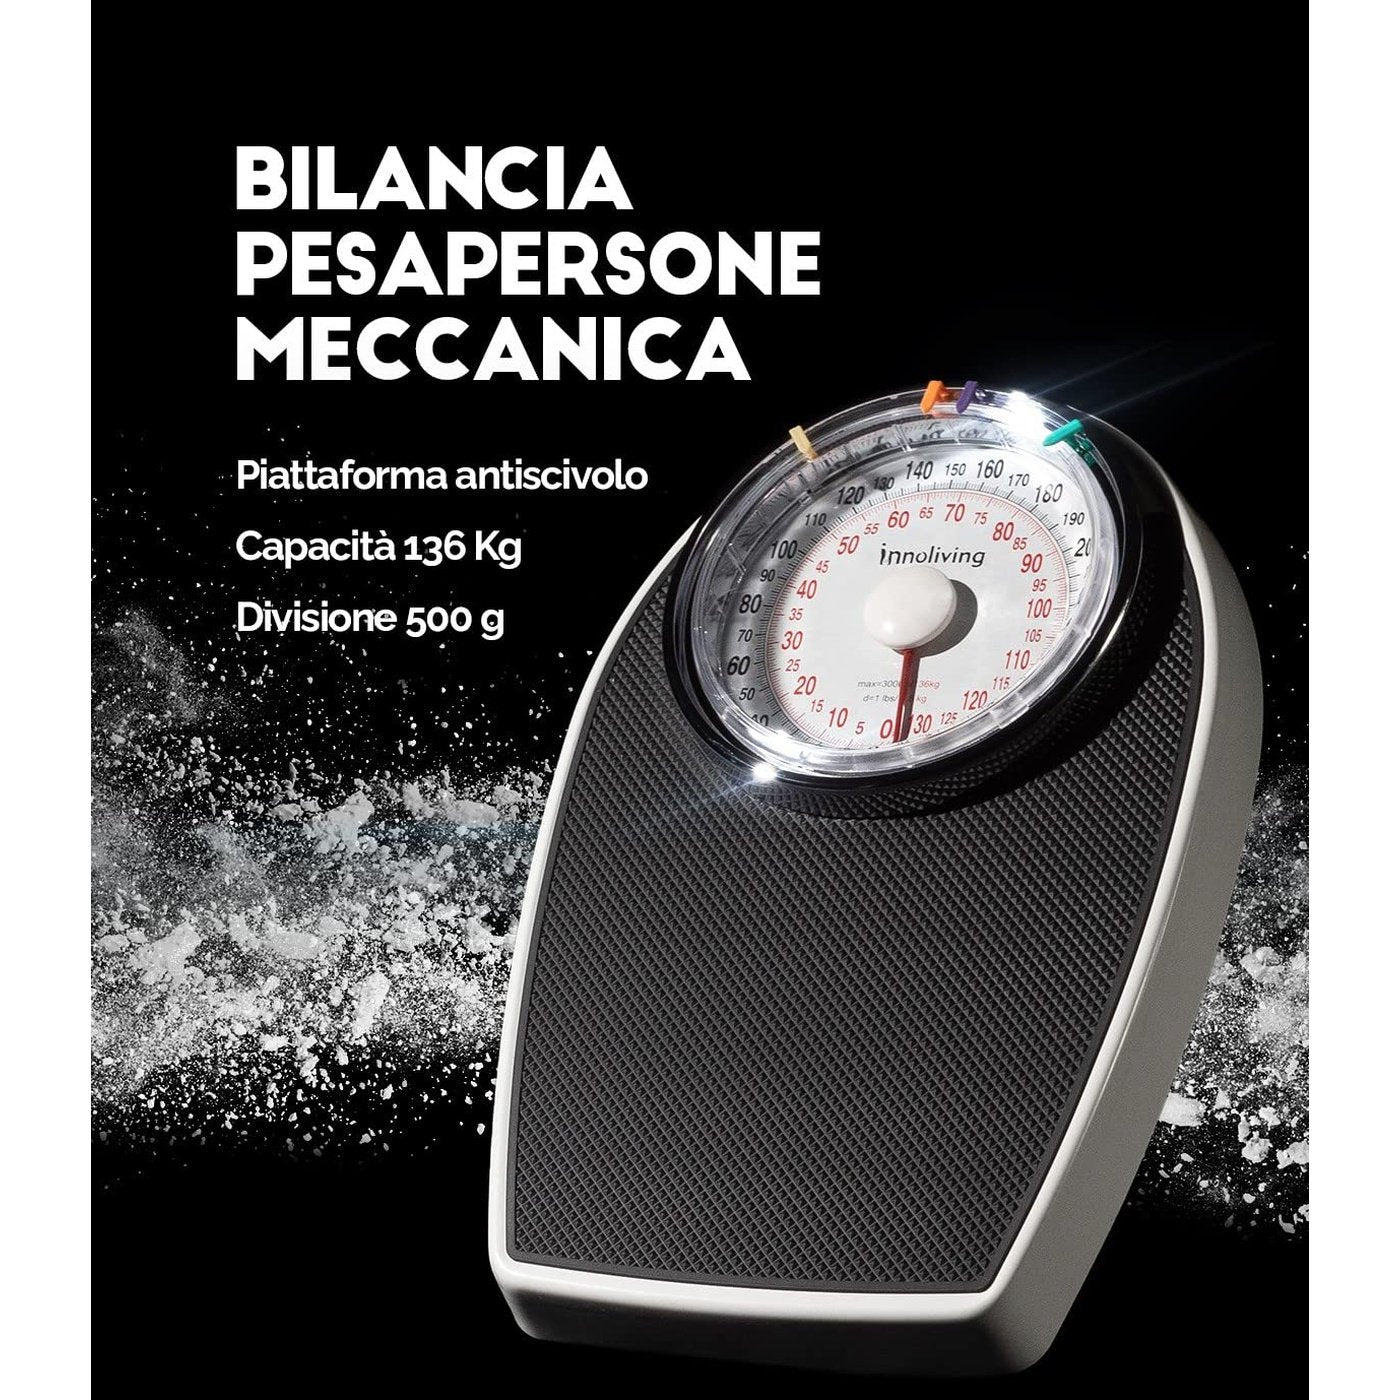 Bilancia Pesapersone Meccanica Innoliving INN-149